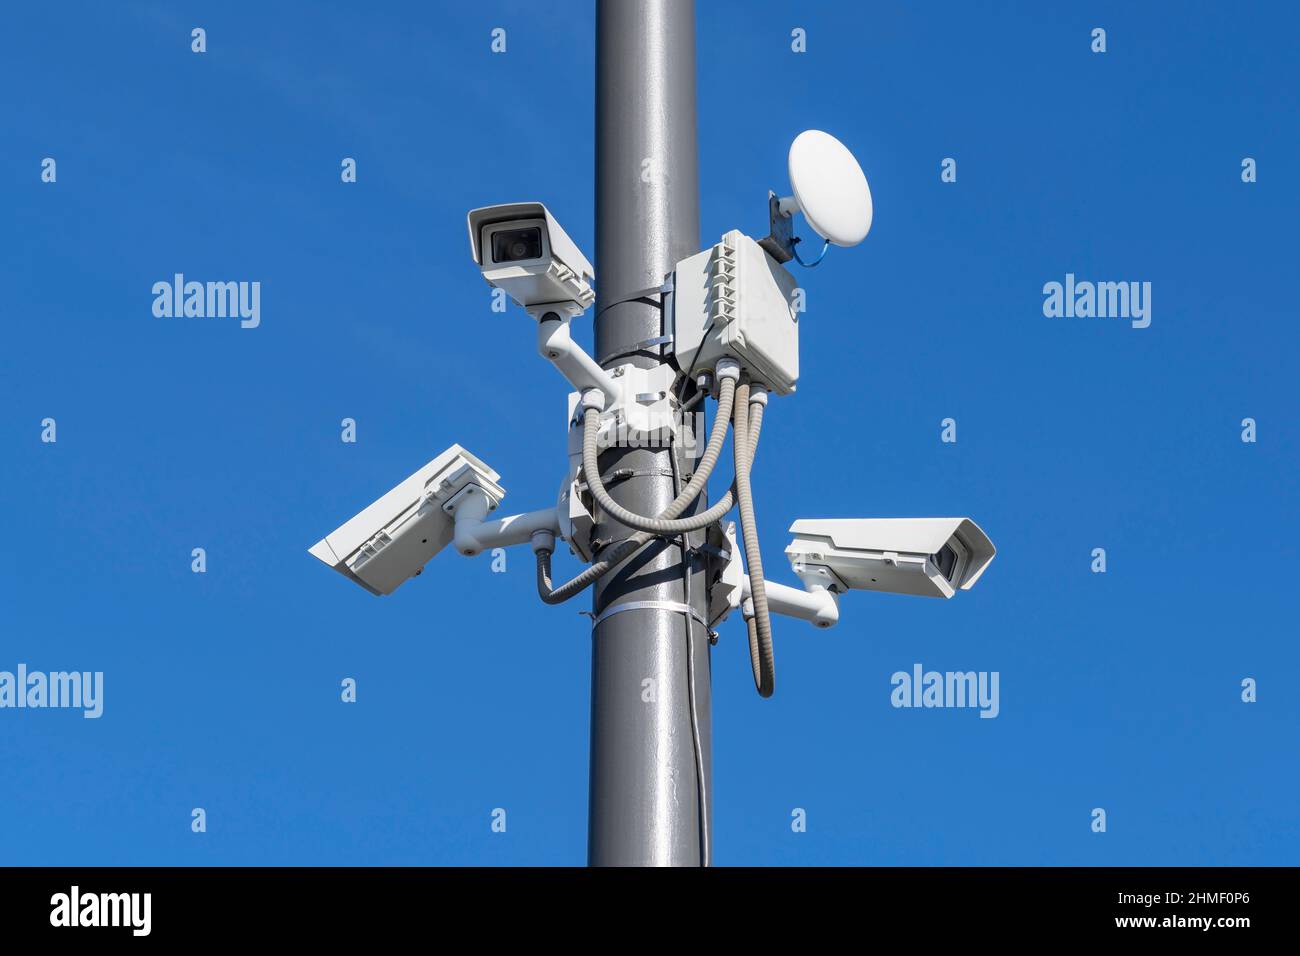 Grupo de cámaras de seguridad de vigilancia en poste alto. Foto de stock